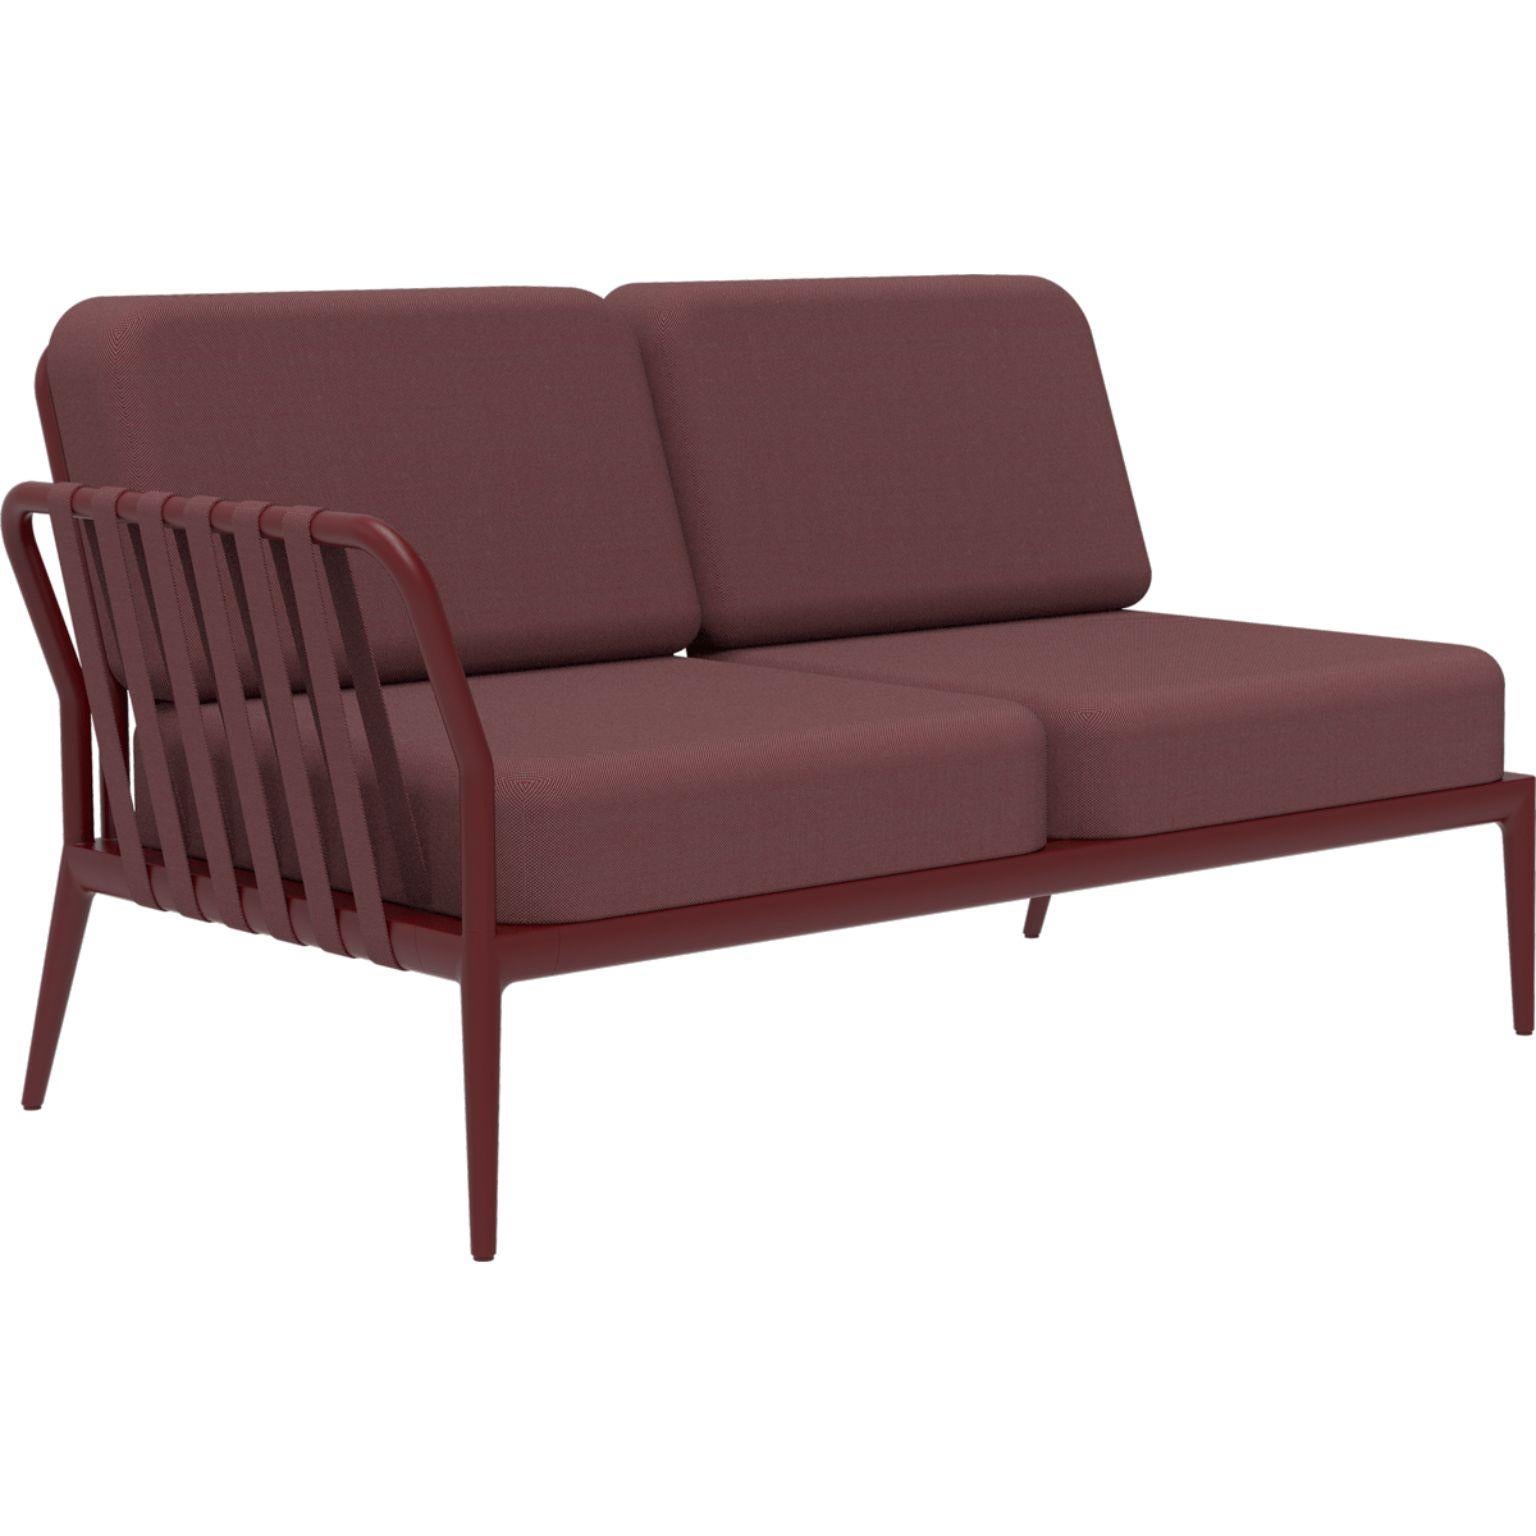 Ribbons burgunderfarbenes modulares doppelsitziges sofa von MOWEE.
Abmessungen: T83 x B148 x H81 cm (Sitzhöhe 42 cm).
MATERIAL: Aluminium und Polstermöbel.
Gewicht: 29 kg
Auch in verschiedenen Farben und Ausführungen erhältlich. 

Eine Collection'S,